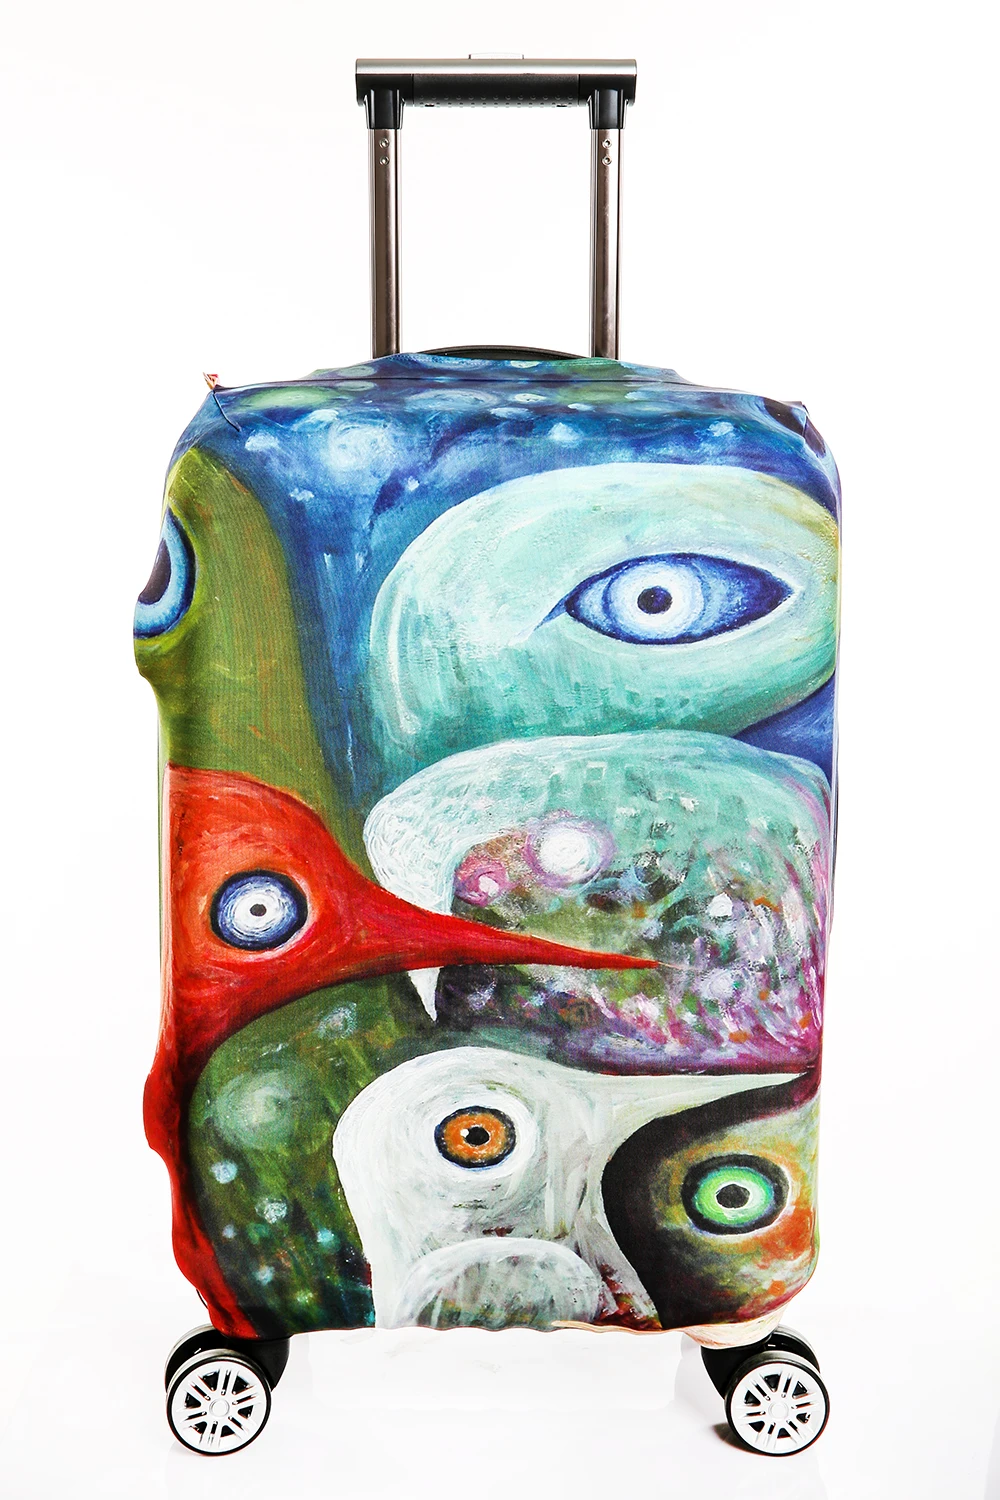 Защитный чехол для чемодана дорожного чемодана случая высокого стрейч чемодан защитная Чехлы для мангала модные Чемодан крышка Капа мала